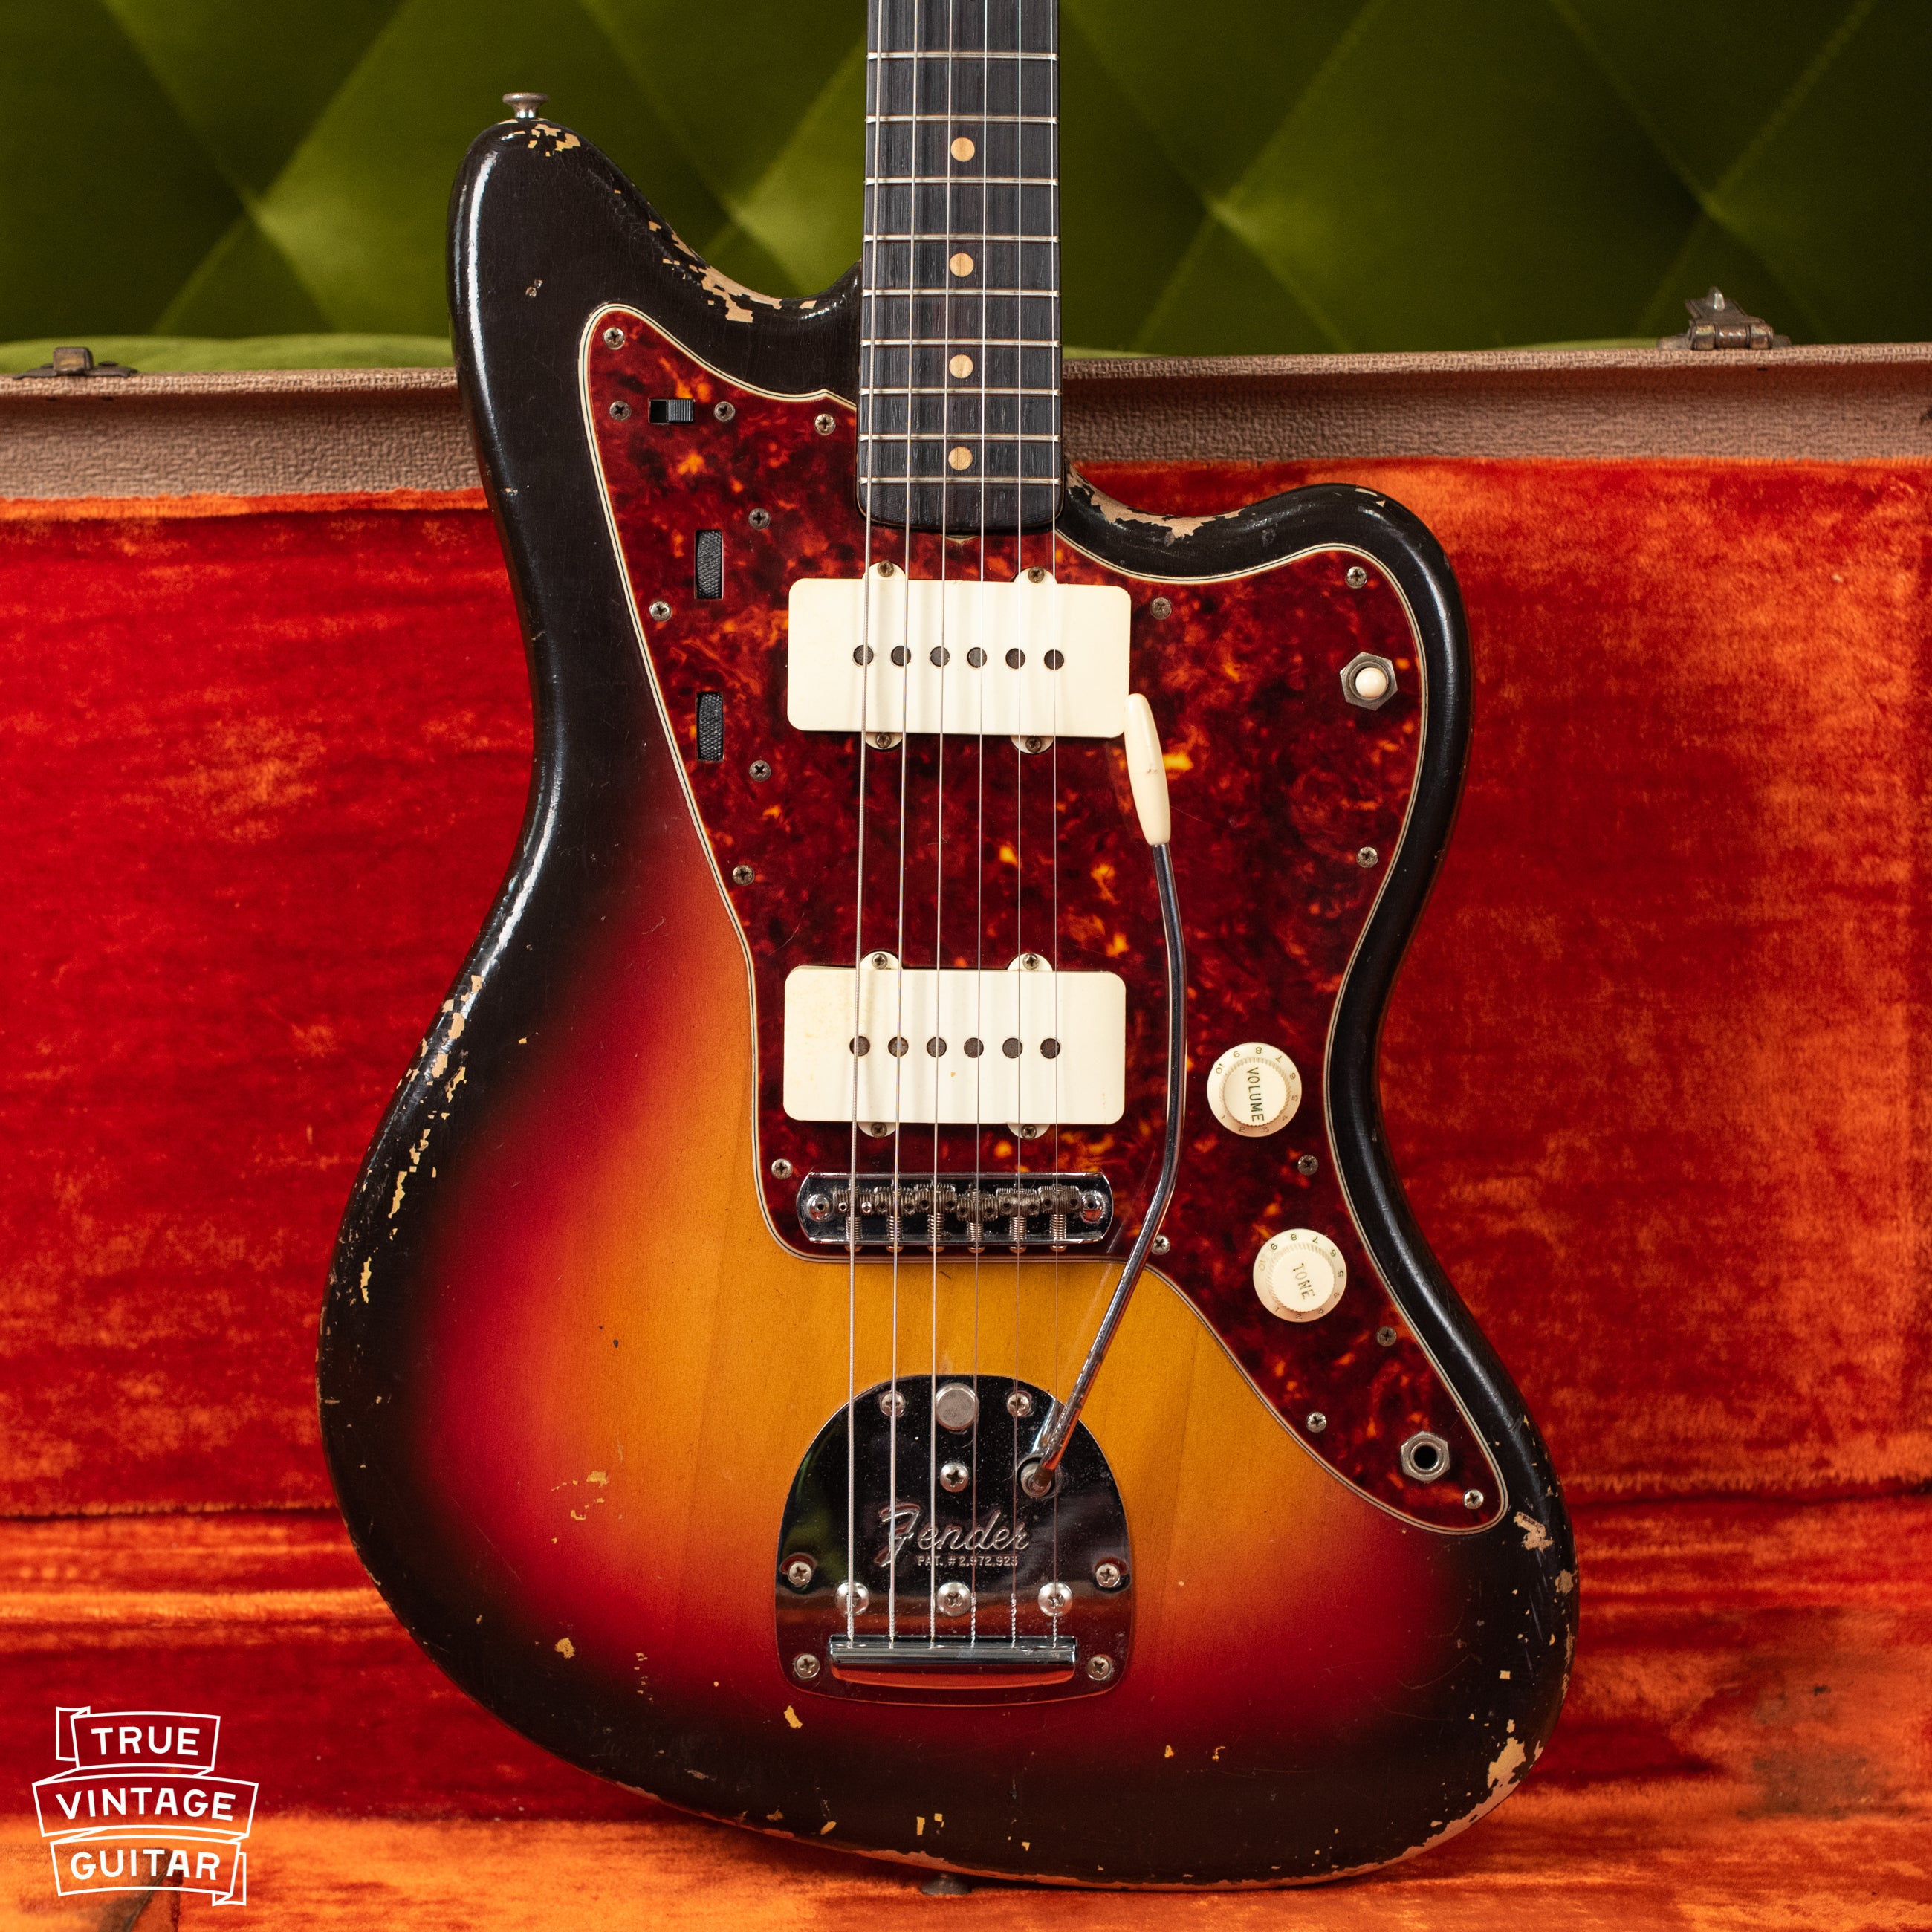 Vintage Fender guitar